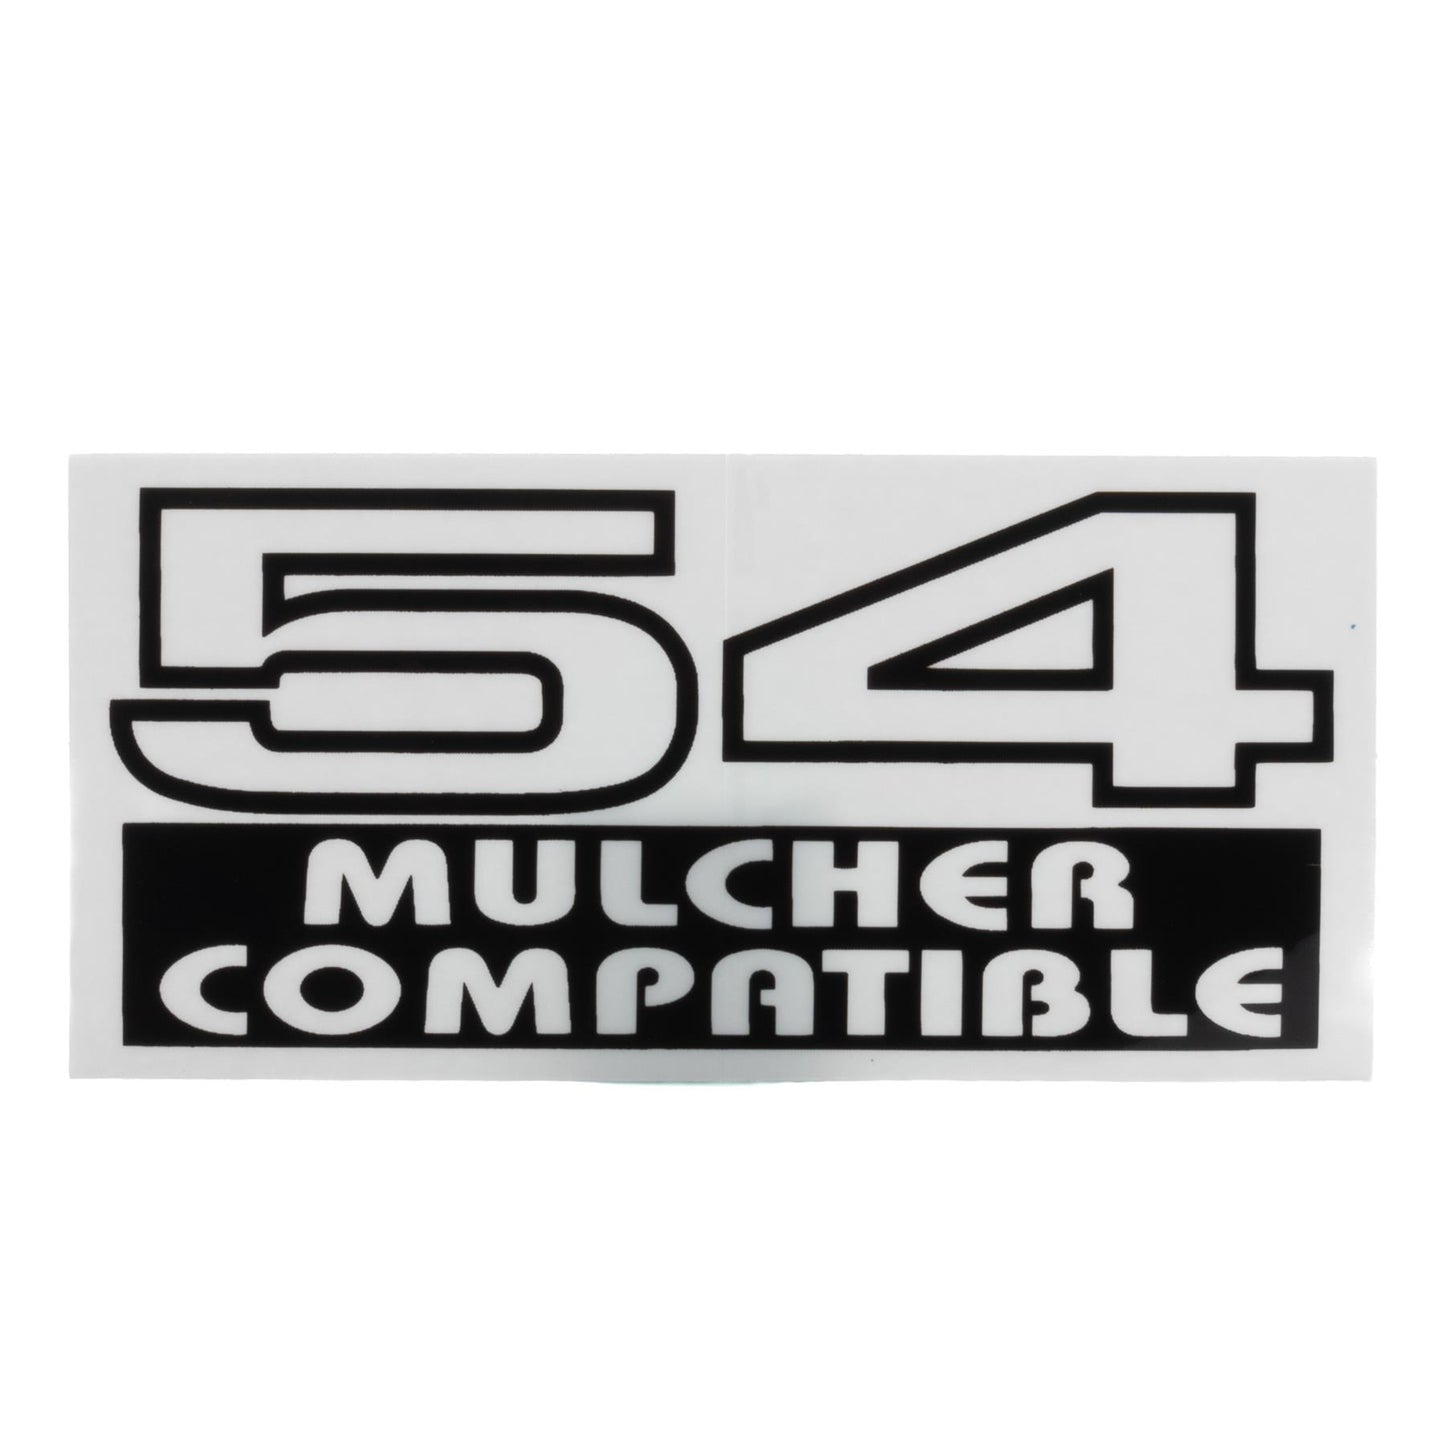 John Deere Decal - 54 Mulcher Compatible - M120161